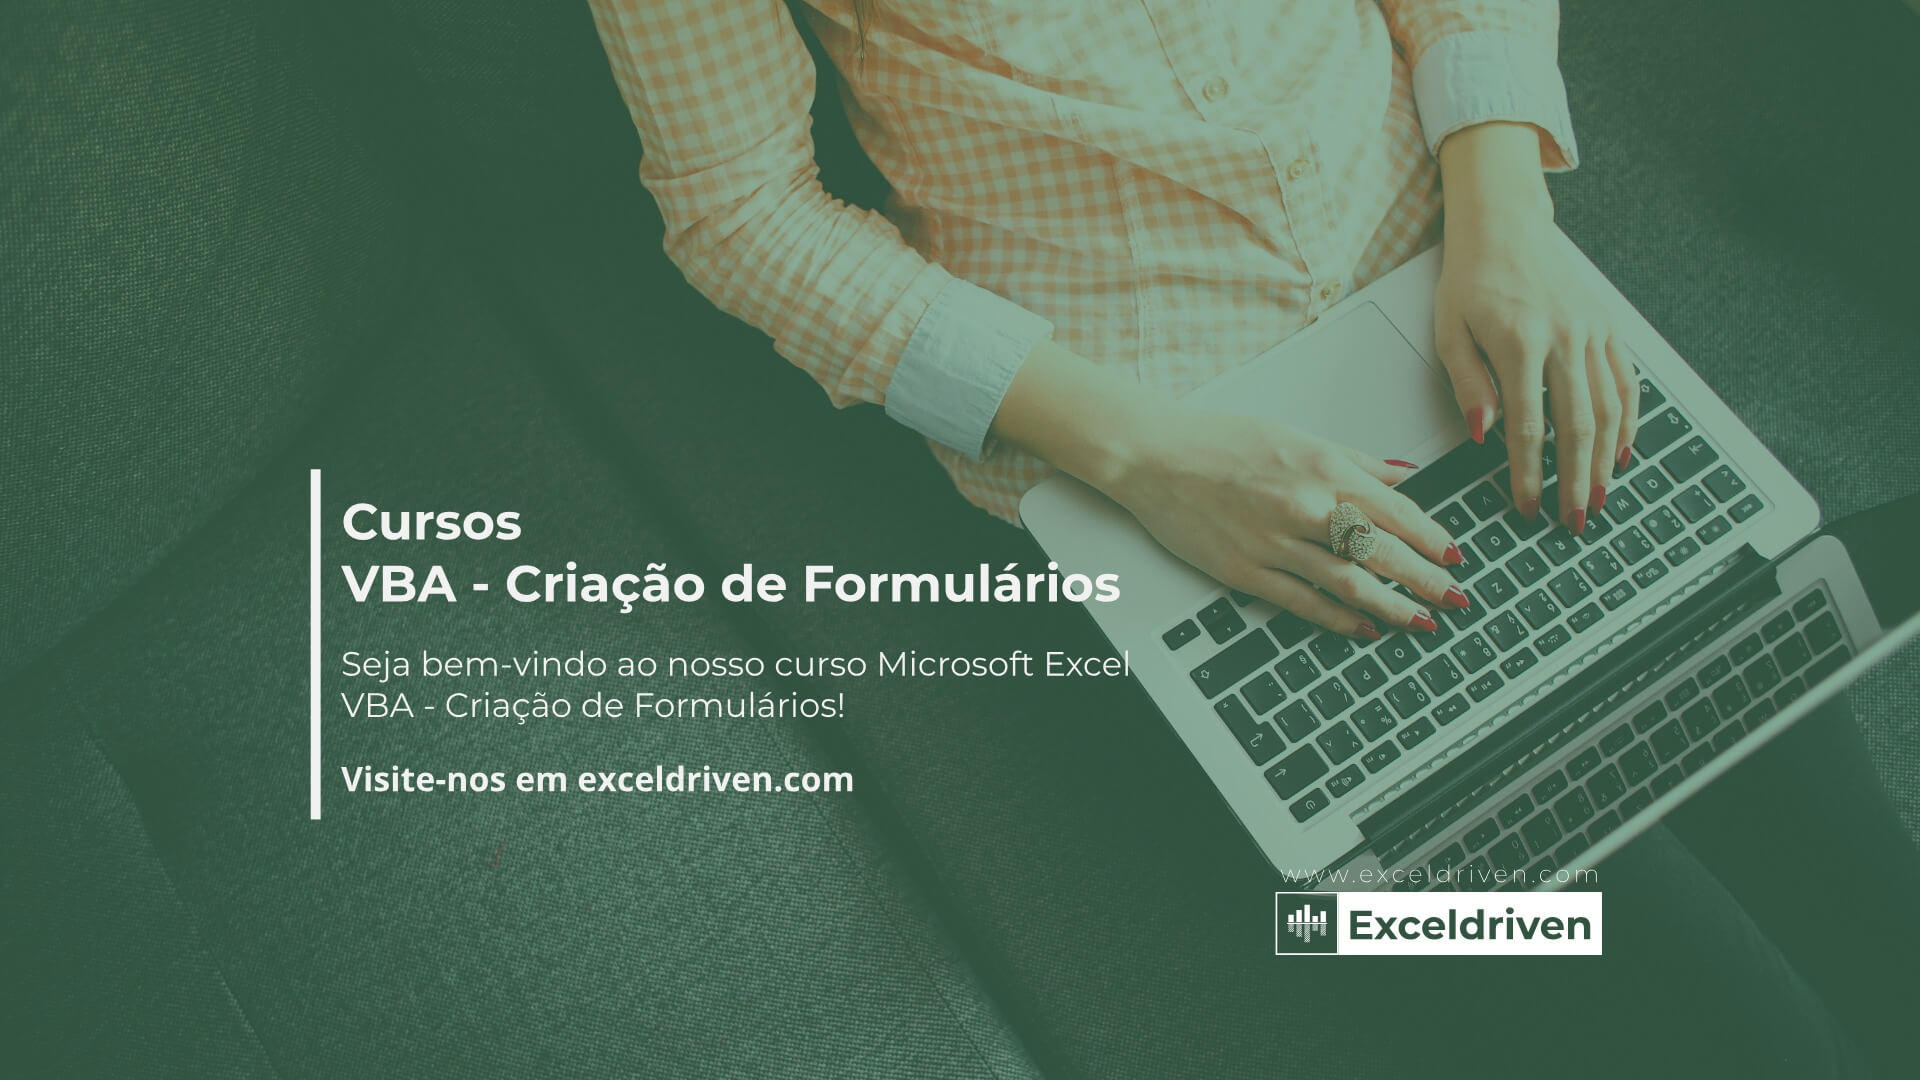 Microsoft Excel VBA - Criação de Formulários